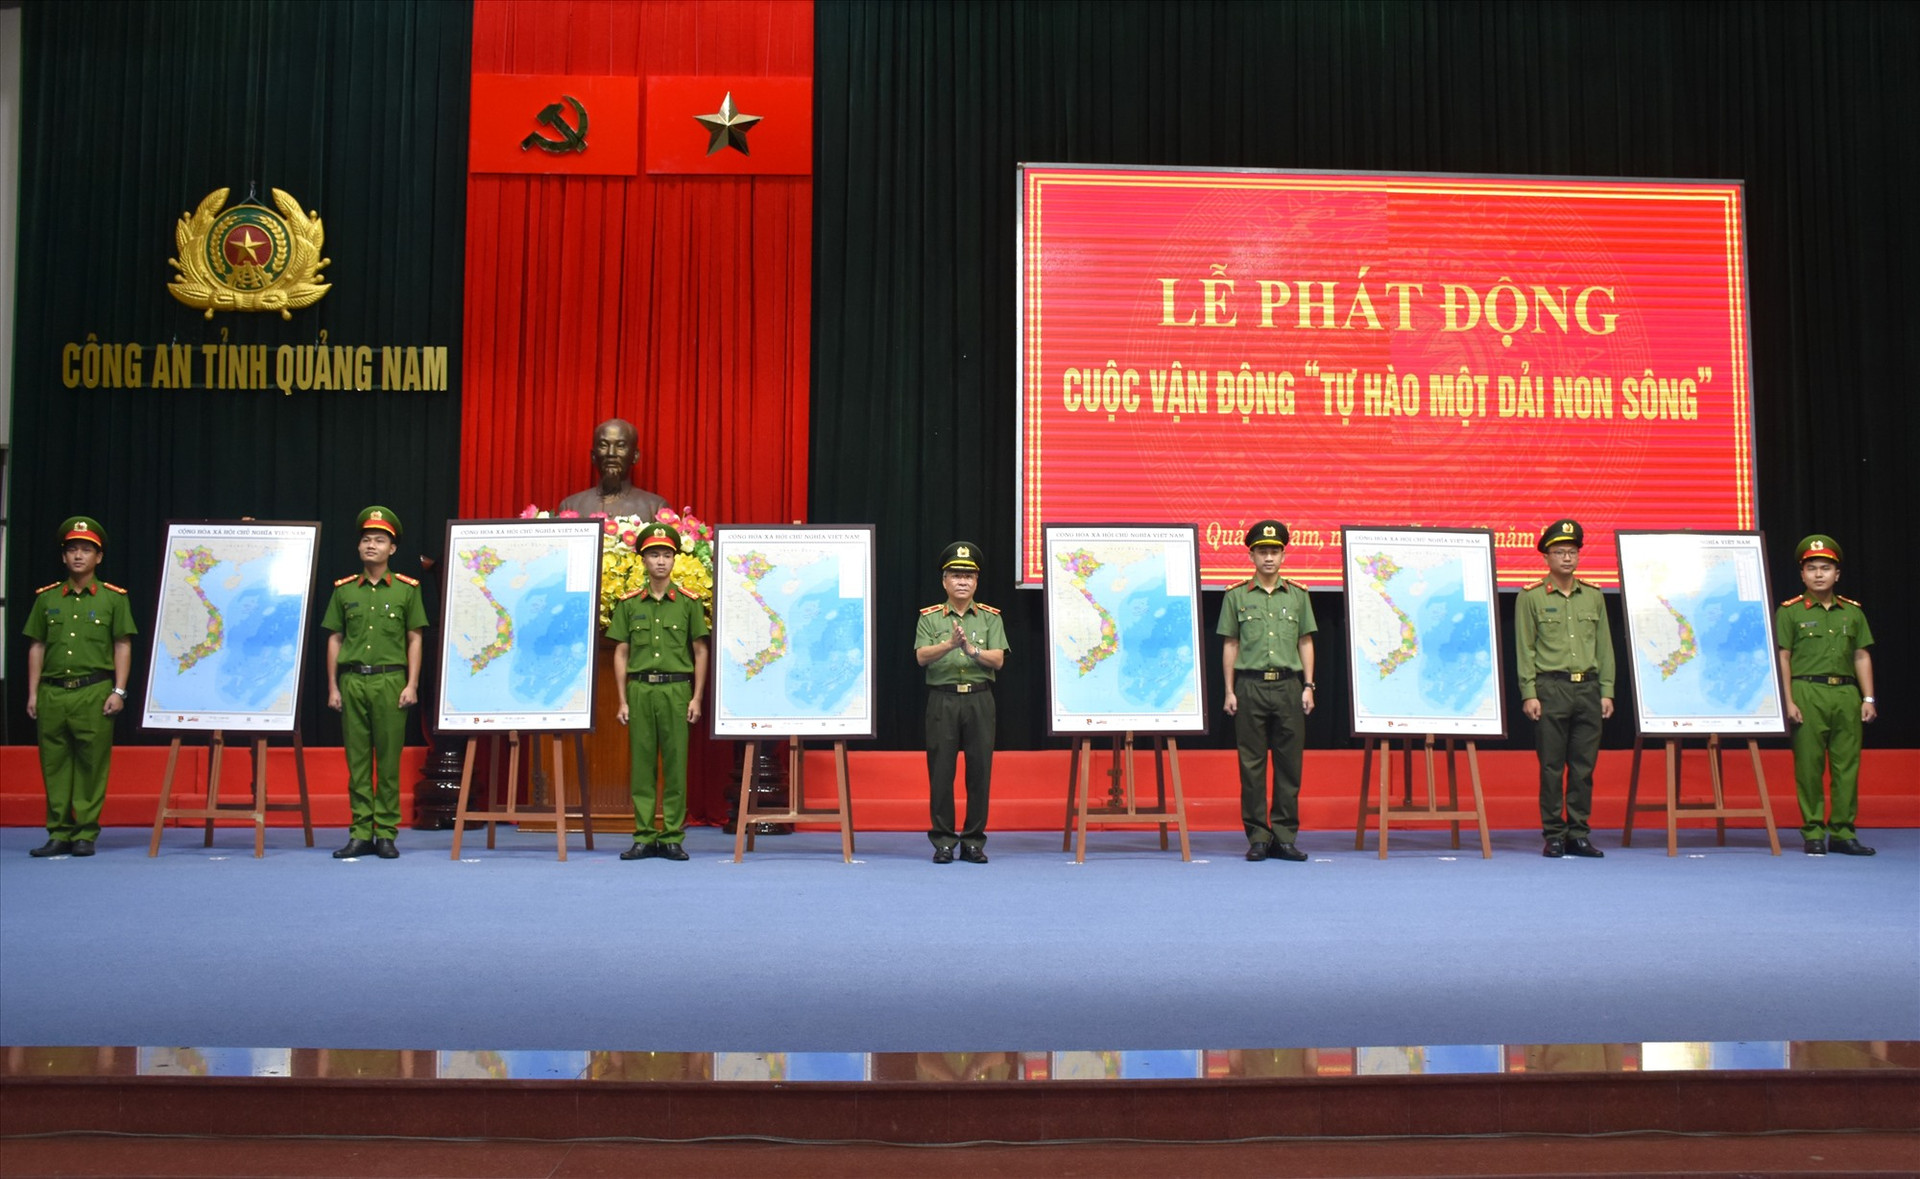 Giám đốc Công an tỉnh trao bản đồ Việt Nam cho đại diện các Ban chấp hành Đoàn cơ sở trực thuộc đại diện cho tuổi trẻ Công an tỉnh.